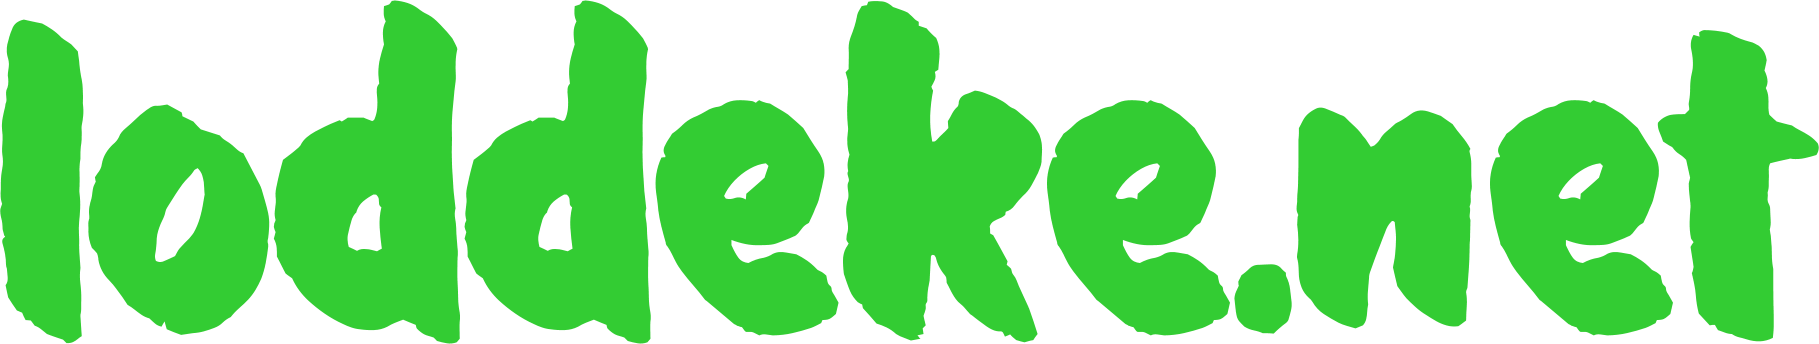 loddeke.net-Logo